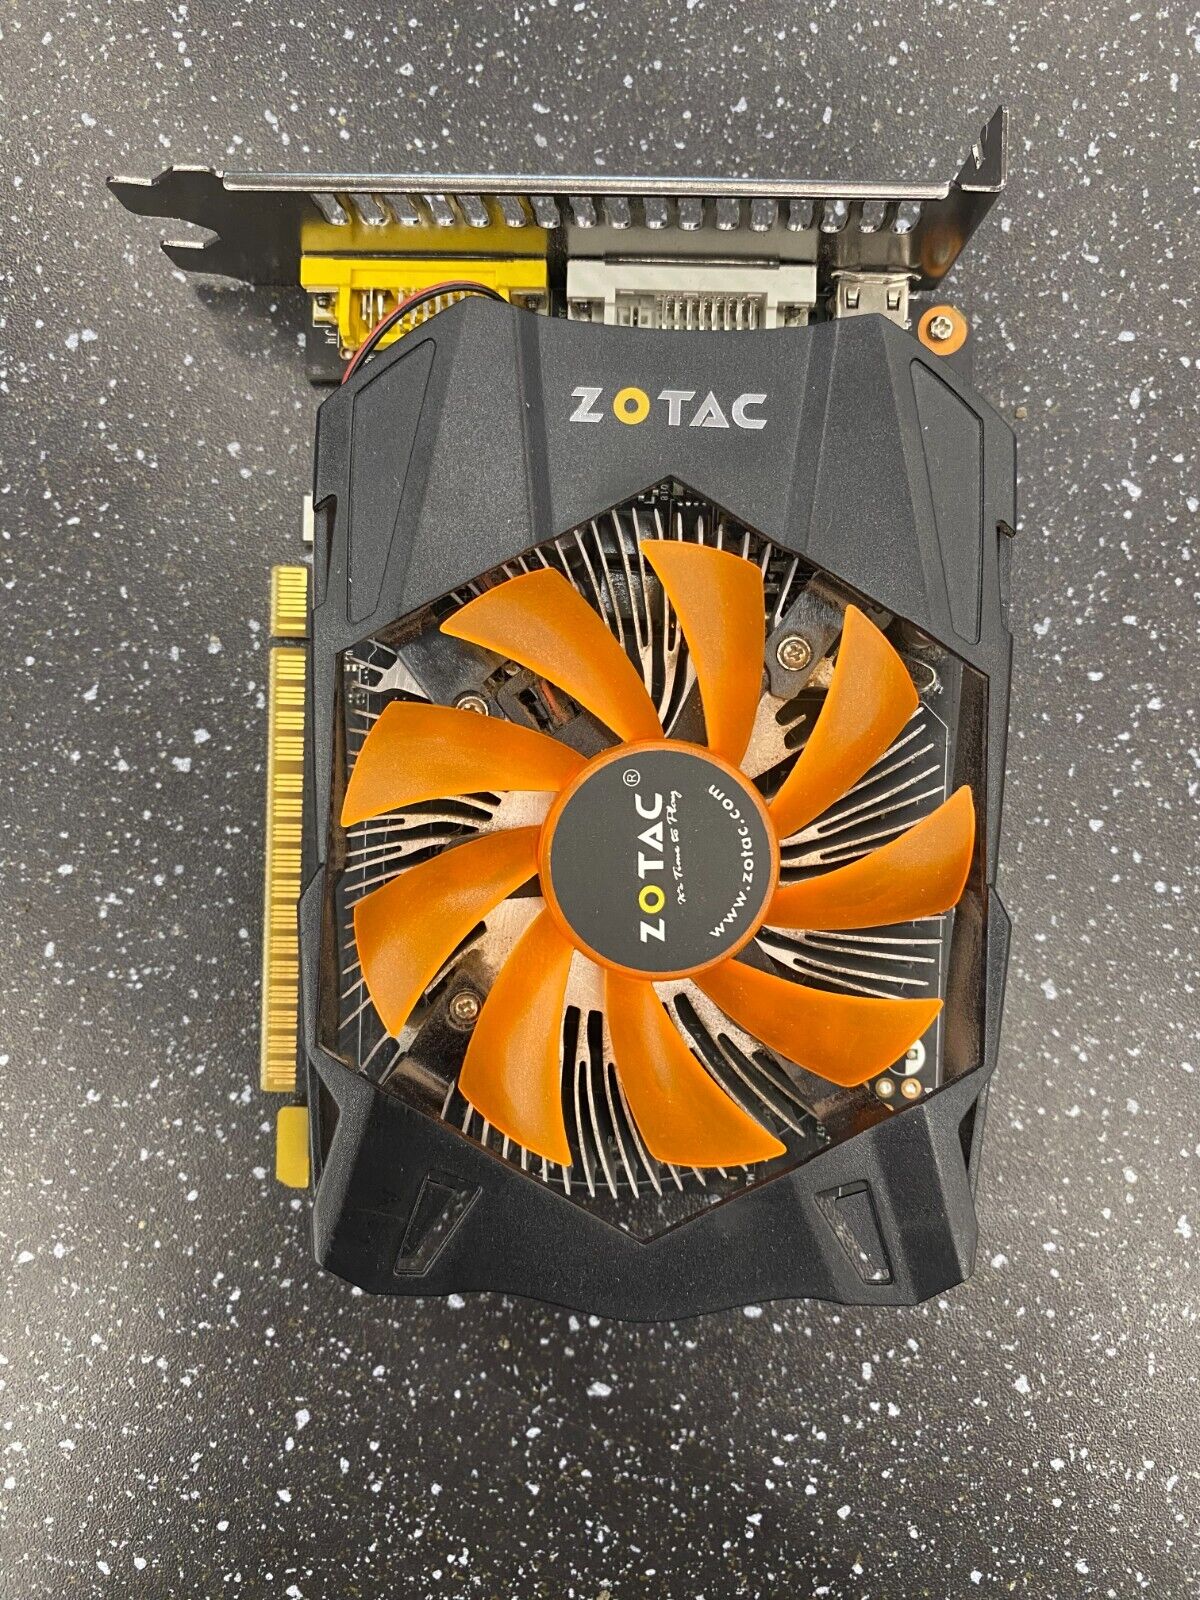 Zotac GeForce GTX 750 Ti 2GB GDDR5 Graphics Card - DVI, Mini HDMI